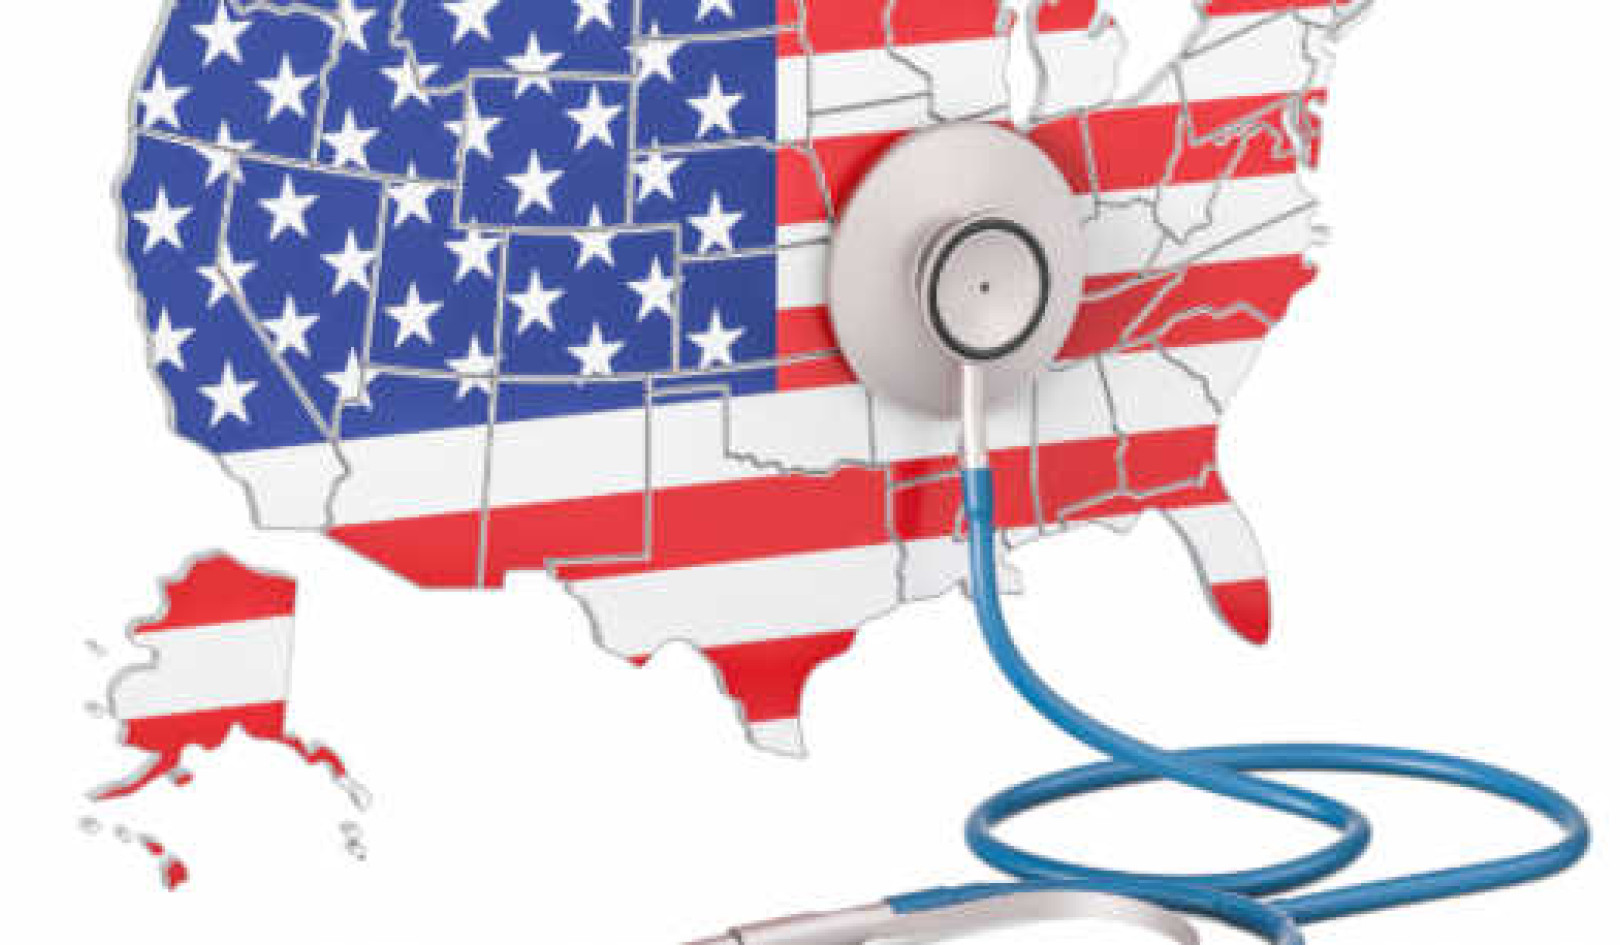 Amerikanisches Gesundheitswesen vs. die Welt